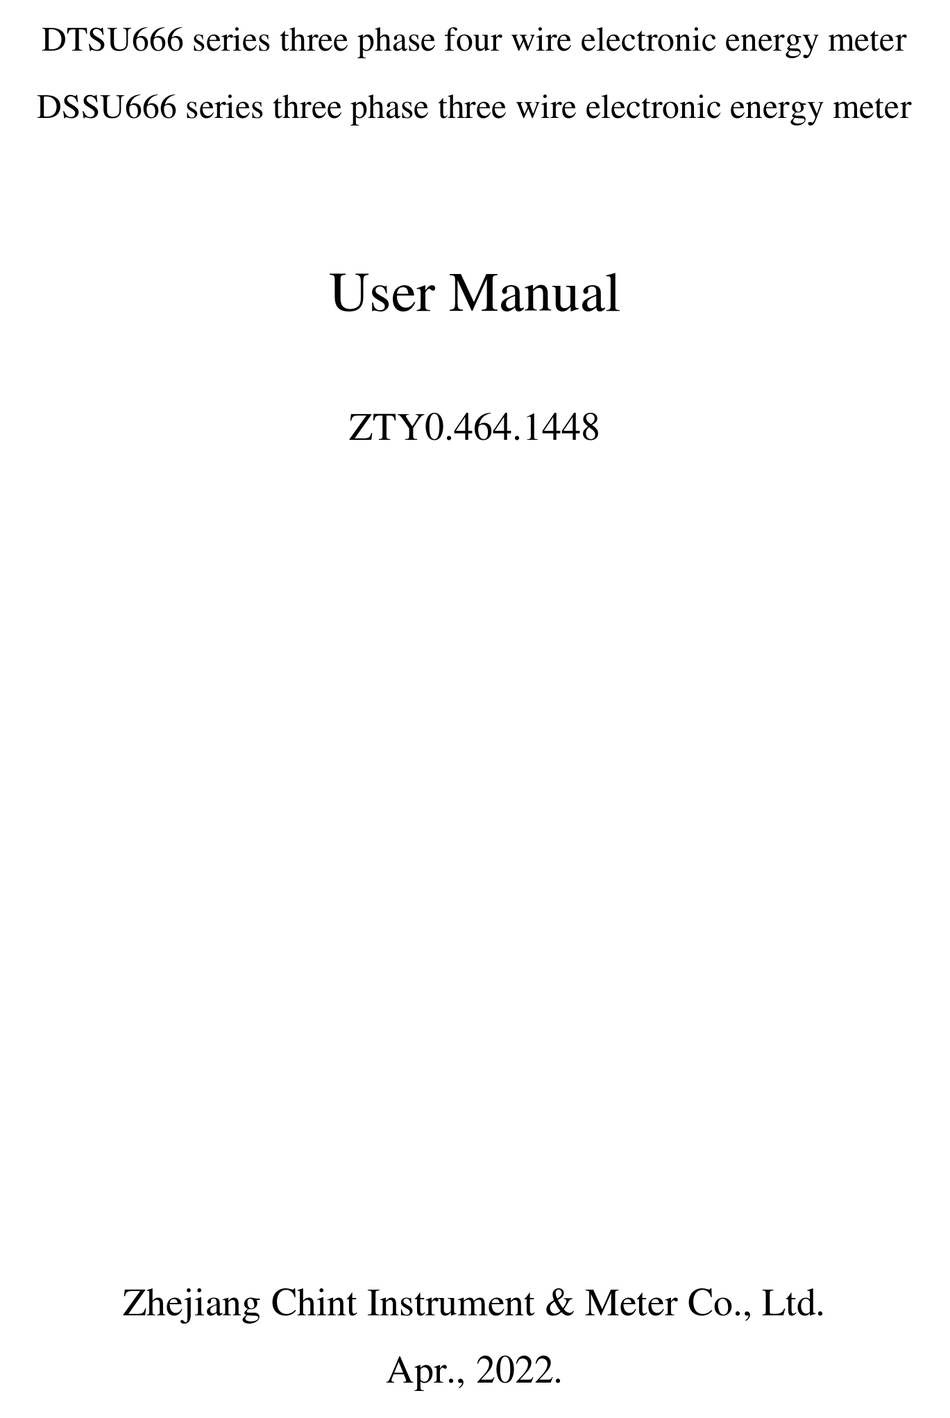 CHINT DTSU666 SERIES USER MANUAL Pdf Download | ManualsLib